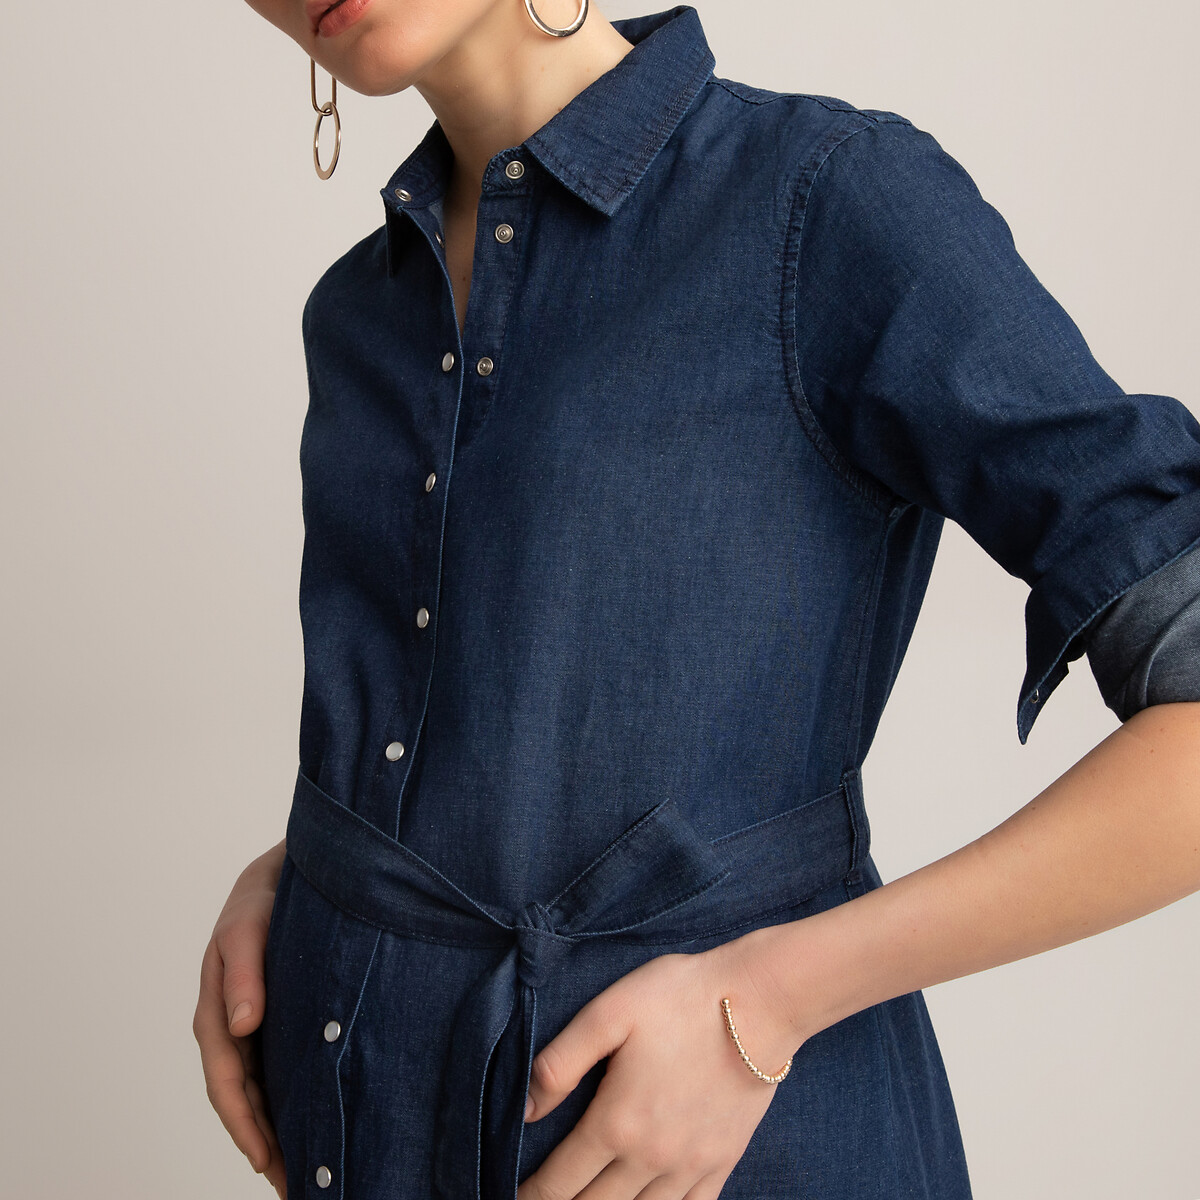 Платье-рубашка LaRedoute Для периода беременности из легкой джинсовой ткани 44 (FR) - 50 (RUS) синий, размер 44 (FR) - 50 (RUS) Для периода беременности из легкой джинсовой ткани 44 (FR) - 50 (RUS) синий - фото 3